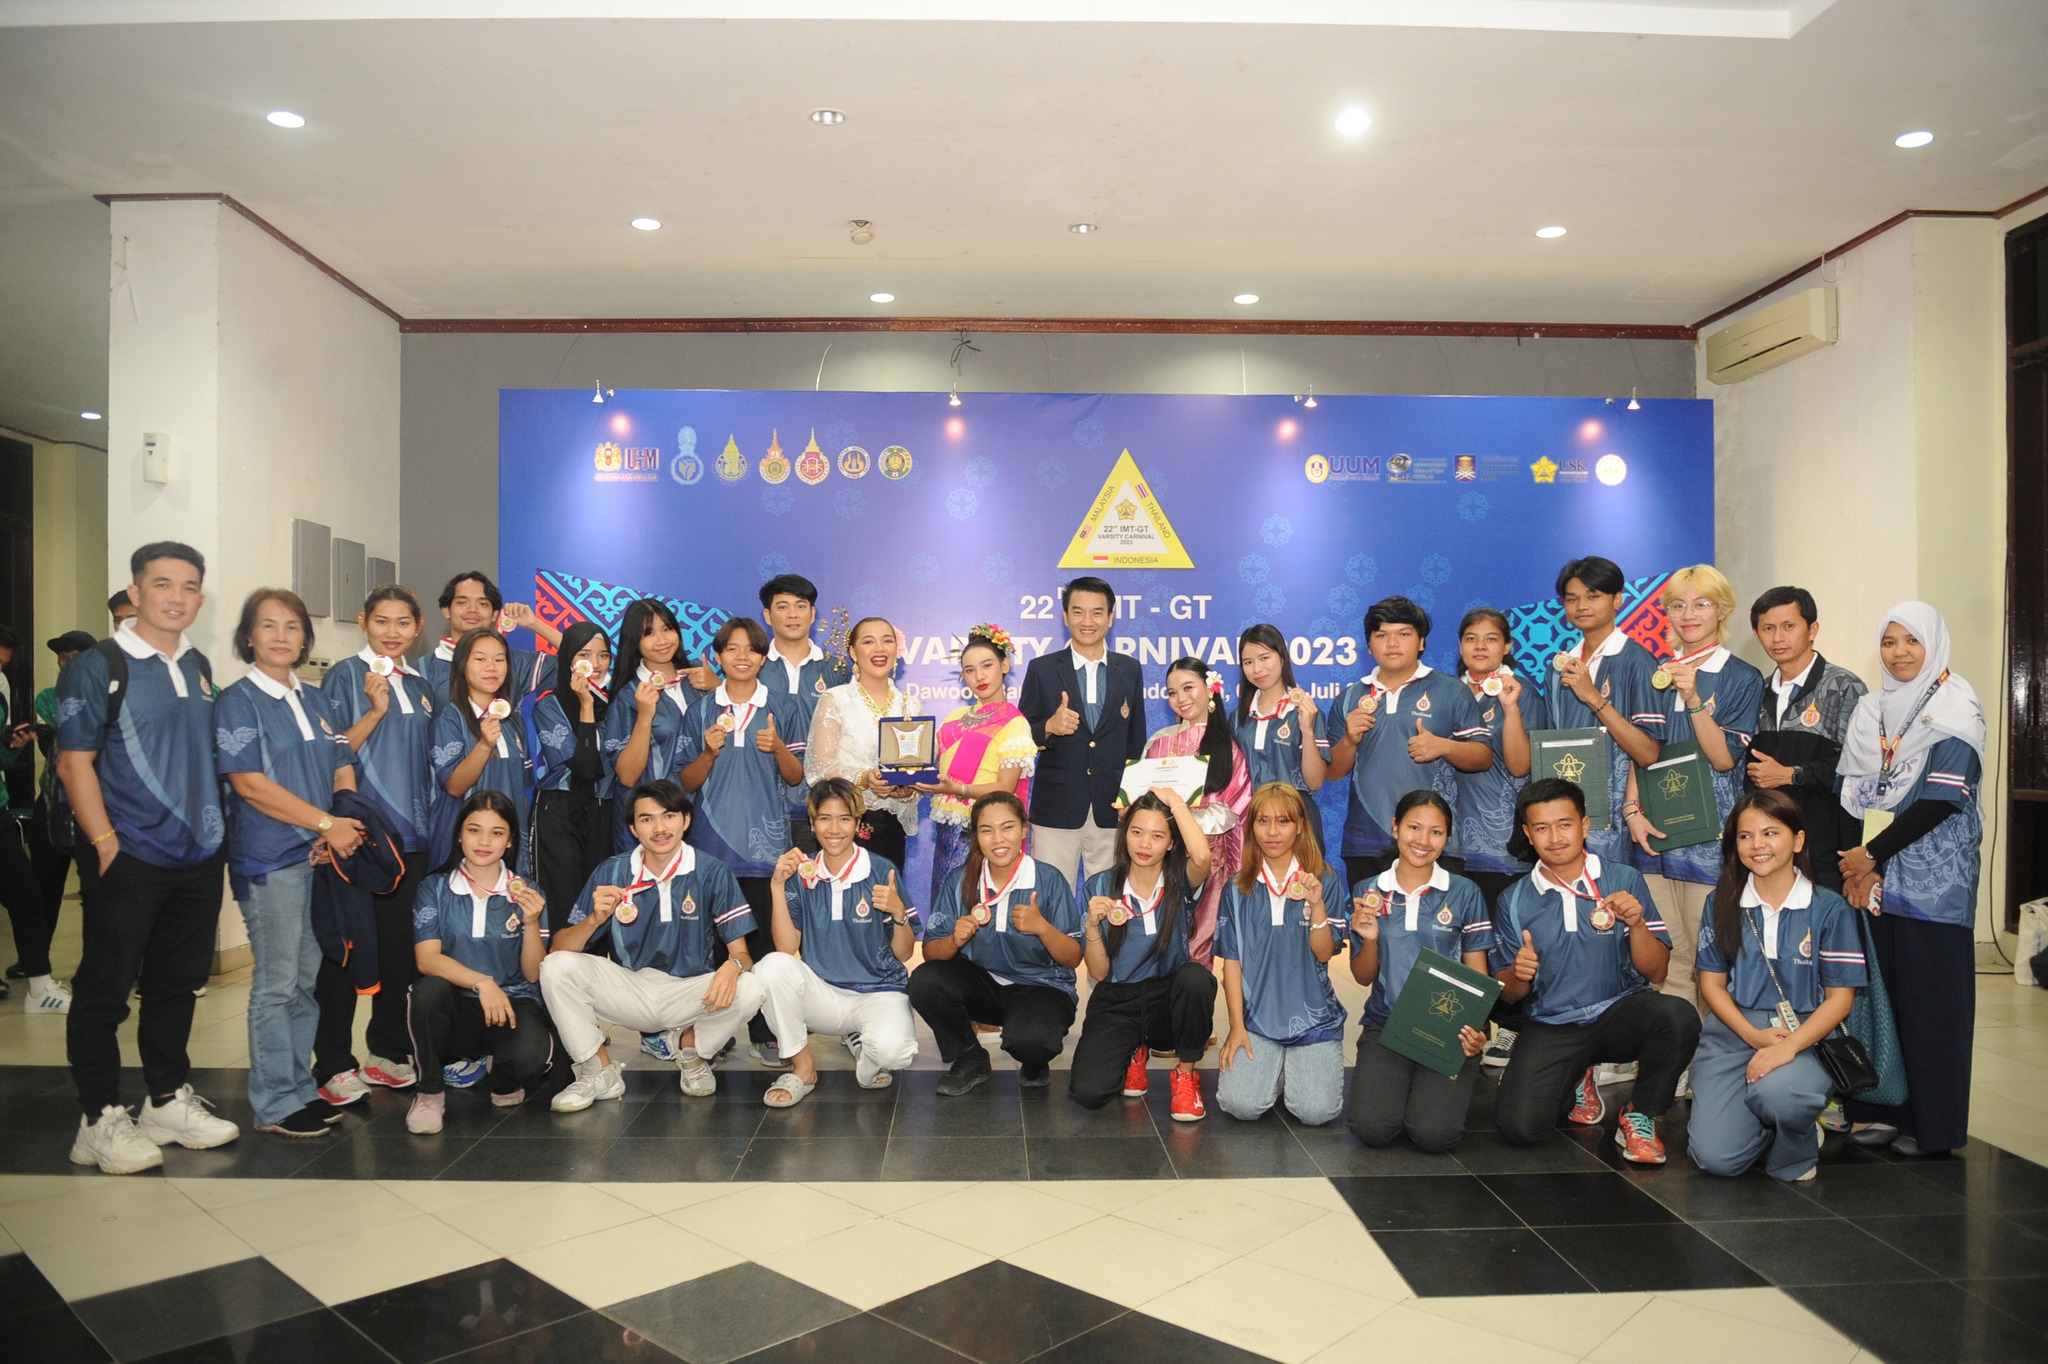 ม.วลัยลักษณ์ คว้า 8 รางวัล กิจกรรม IMT-GT Varsity Carnival 2023 ครั้งที่ 22​ ที่ประเทศอินโดนีเซีย